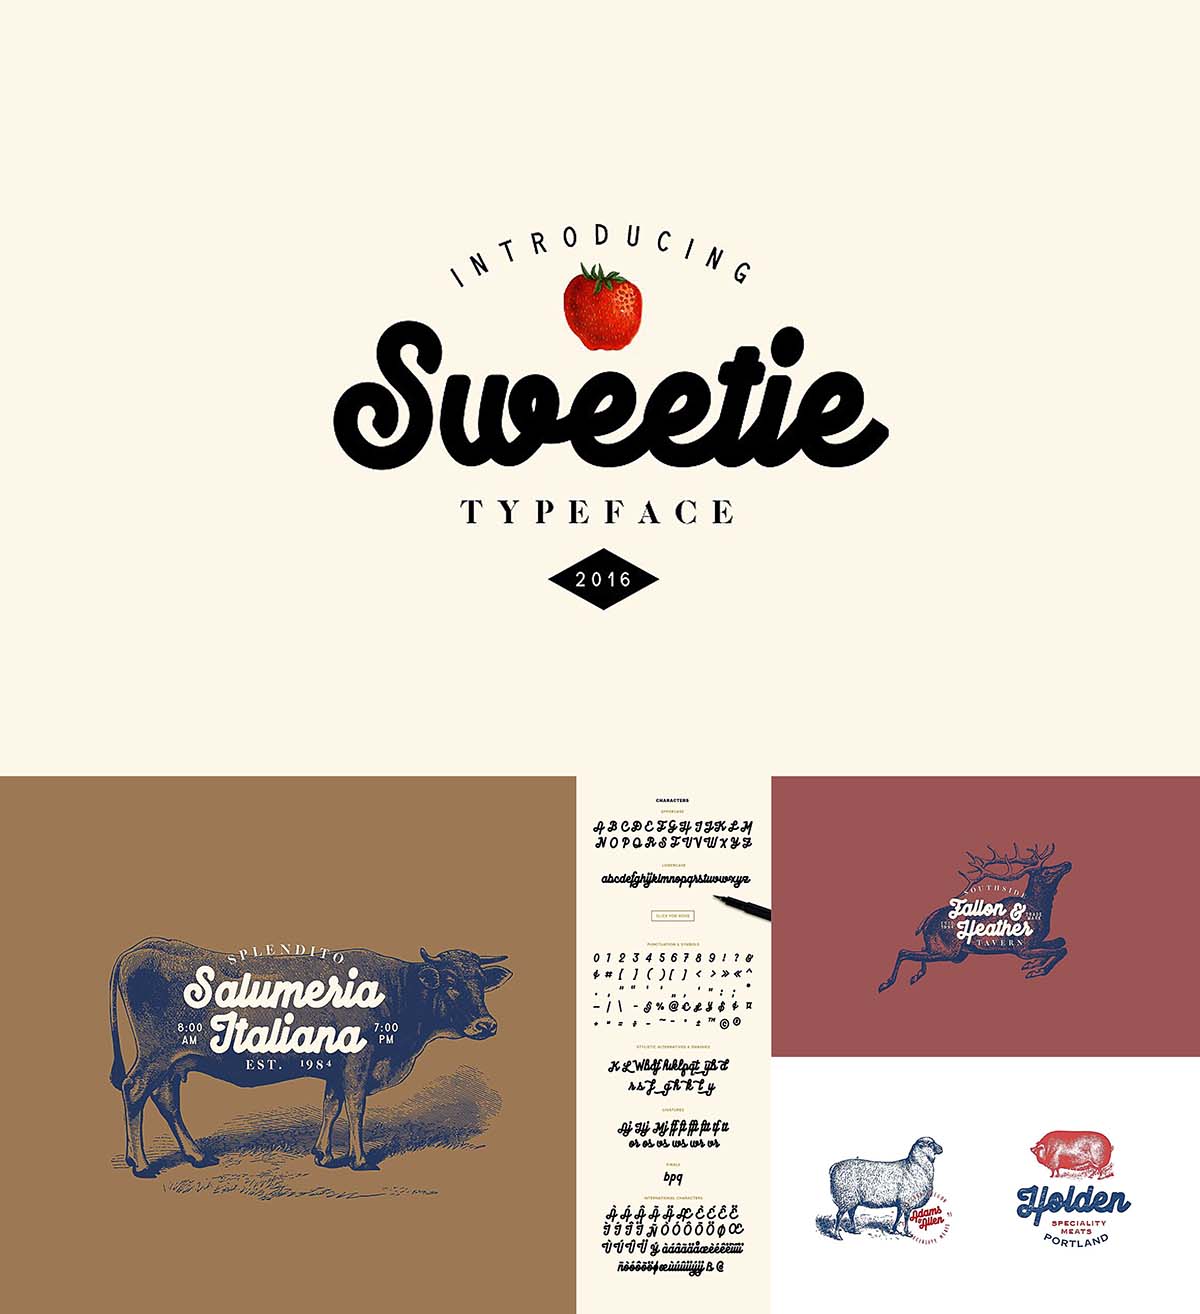 Sweetie monoline typeface